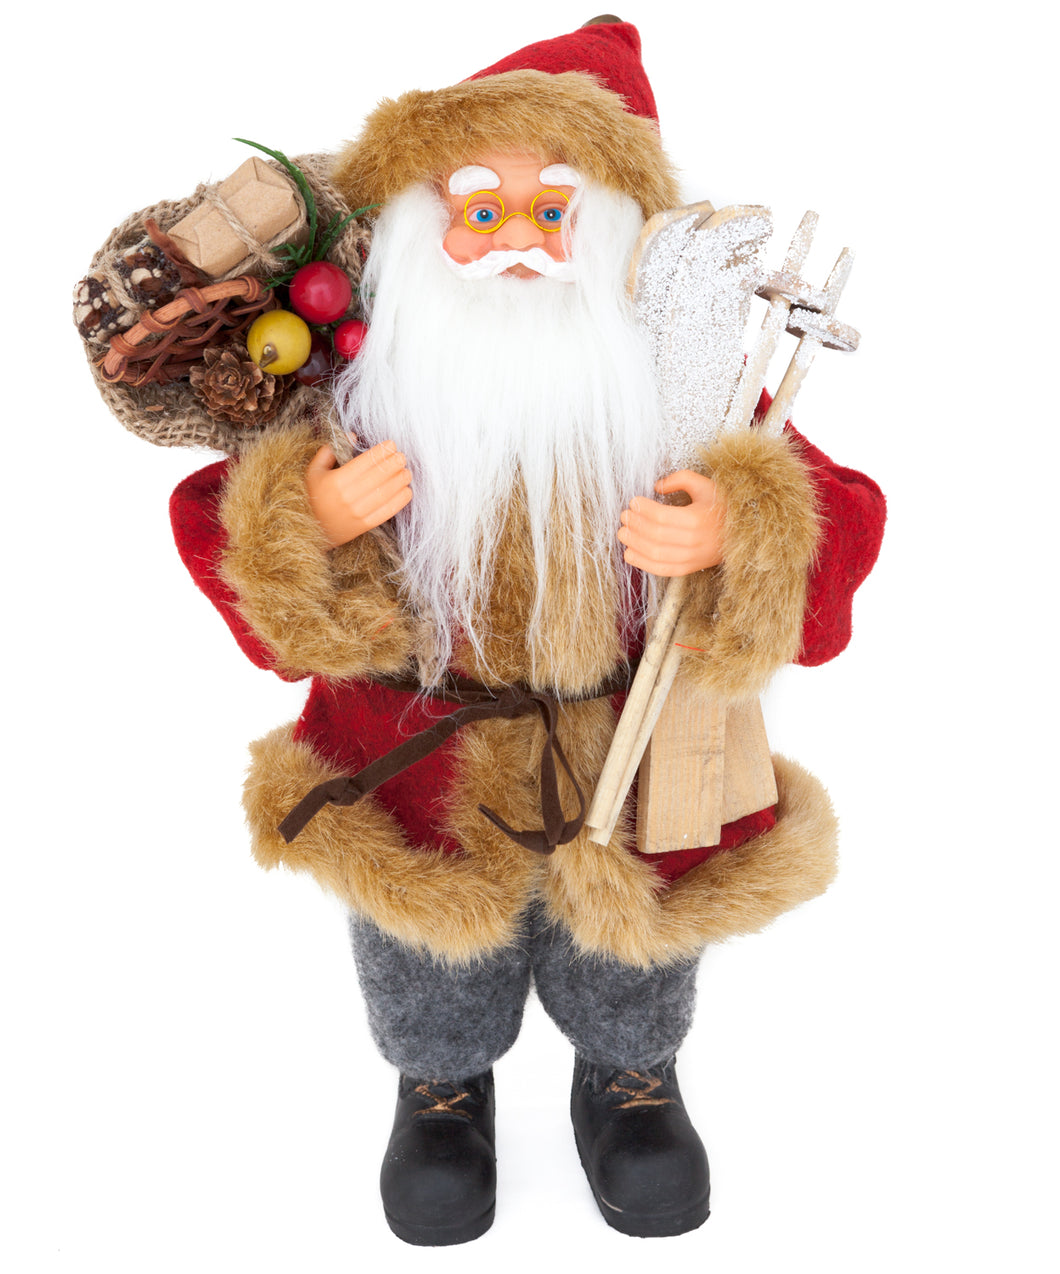 Weihnachtsmann mit Skier und Geschenkesack, 30 cm hoch, Sehr Detailliert - Perfekte Dekoration